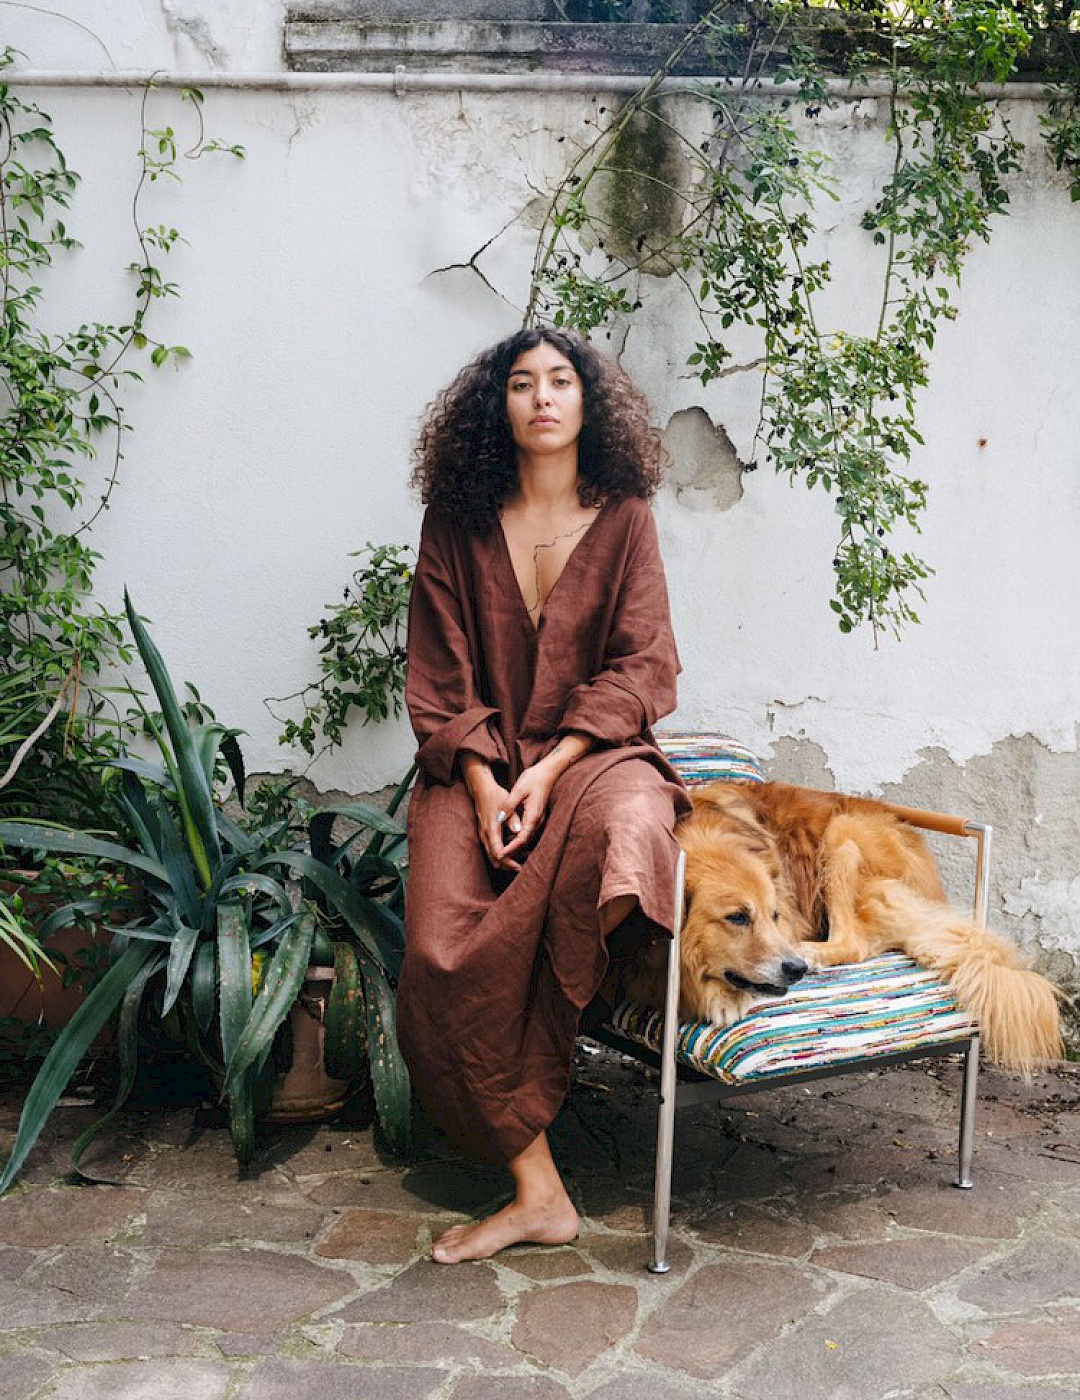 Frontales Ganzkörperportrait von Leila Bencharnia vor einer Mauer mit Pflanzen. Sie sitzt neben einem Hund auf der Armlehne eines Sessels.